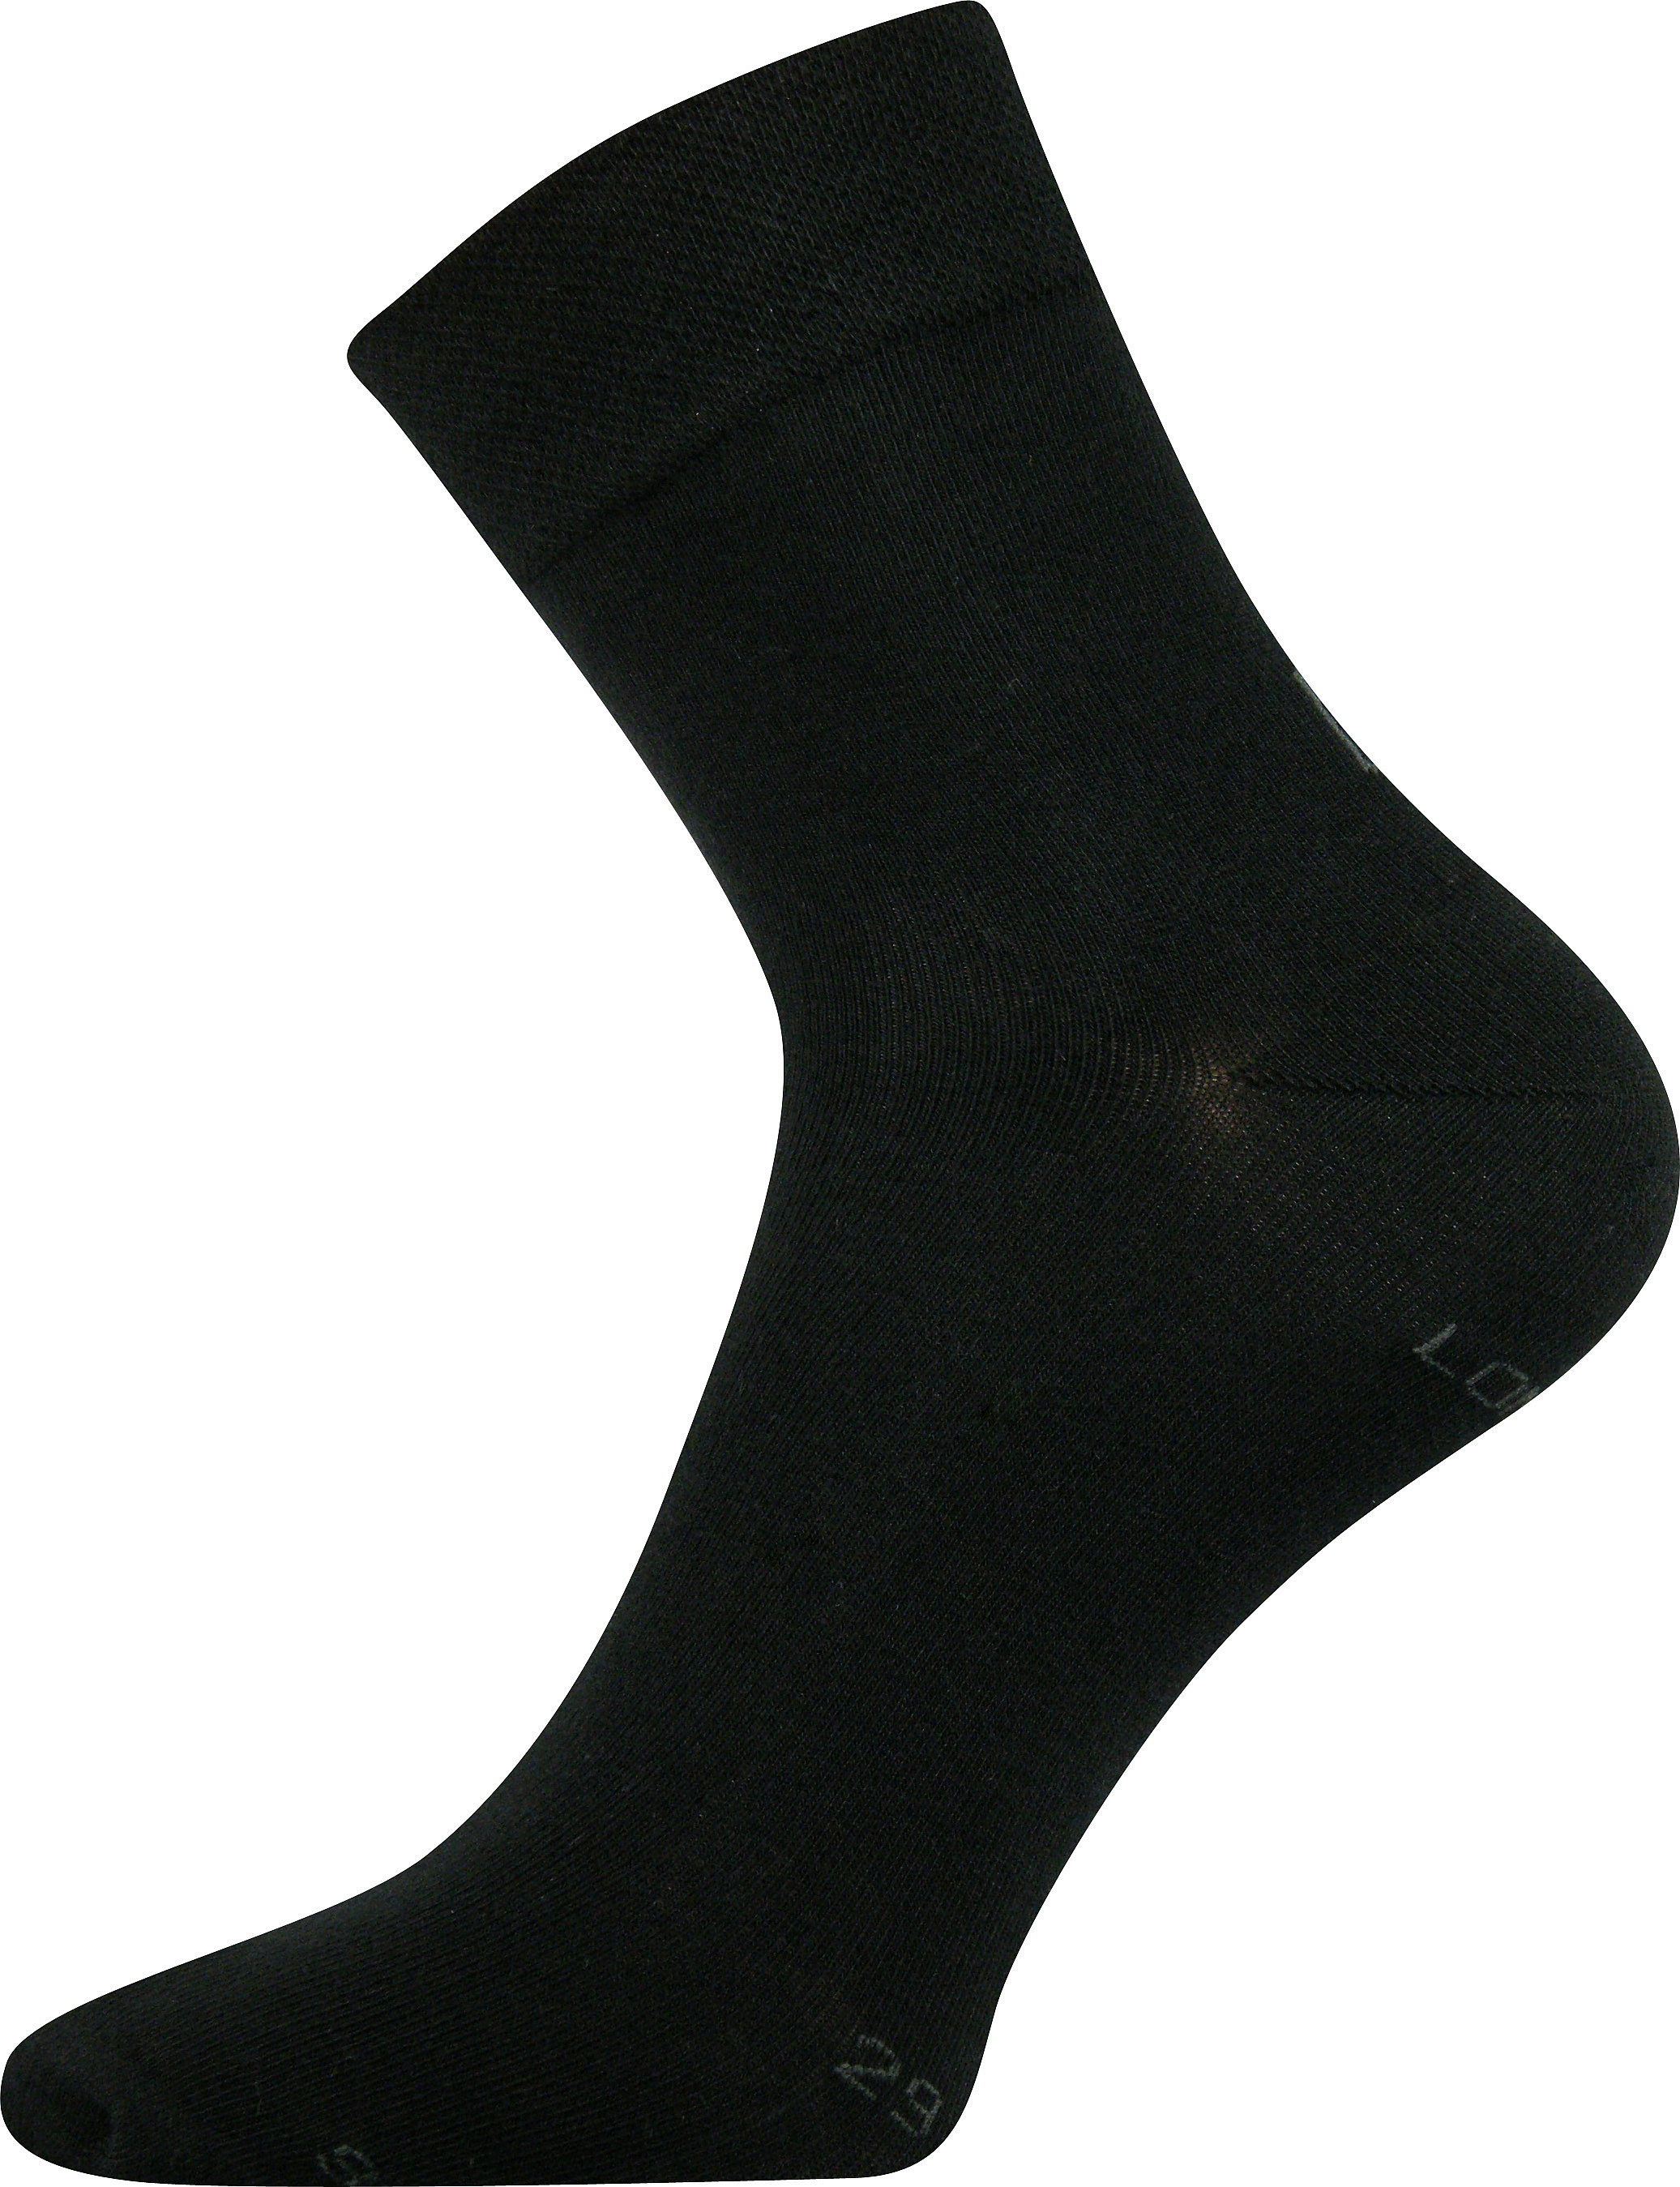 Ponožky společenské Lonka Haner - černé, 43-46